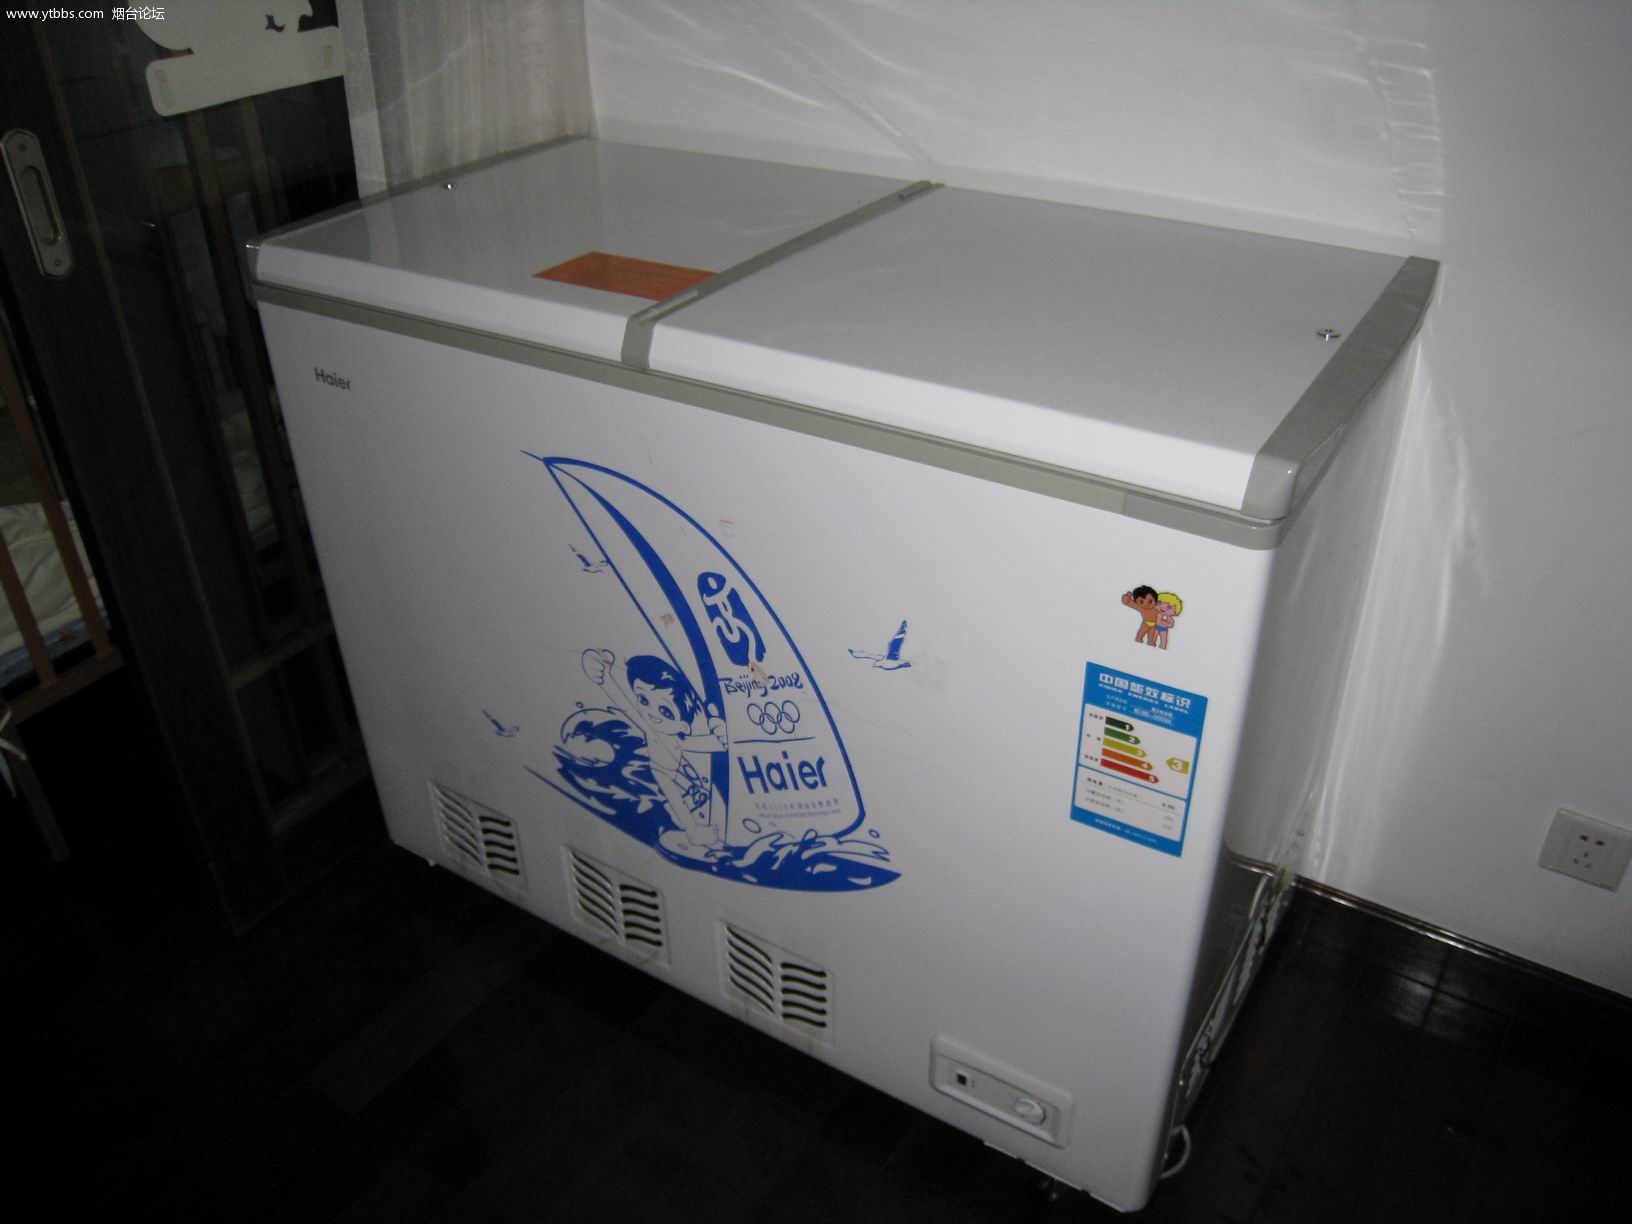 海尔冰柜217升，TCL冰箱出售，自家用的东西有图 - 家用电器\/影音设备\/厨房生活电器 - 烟台论坛-烟台社区